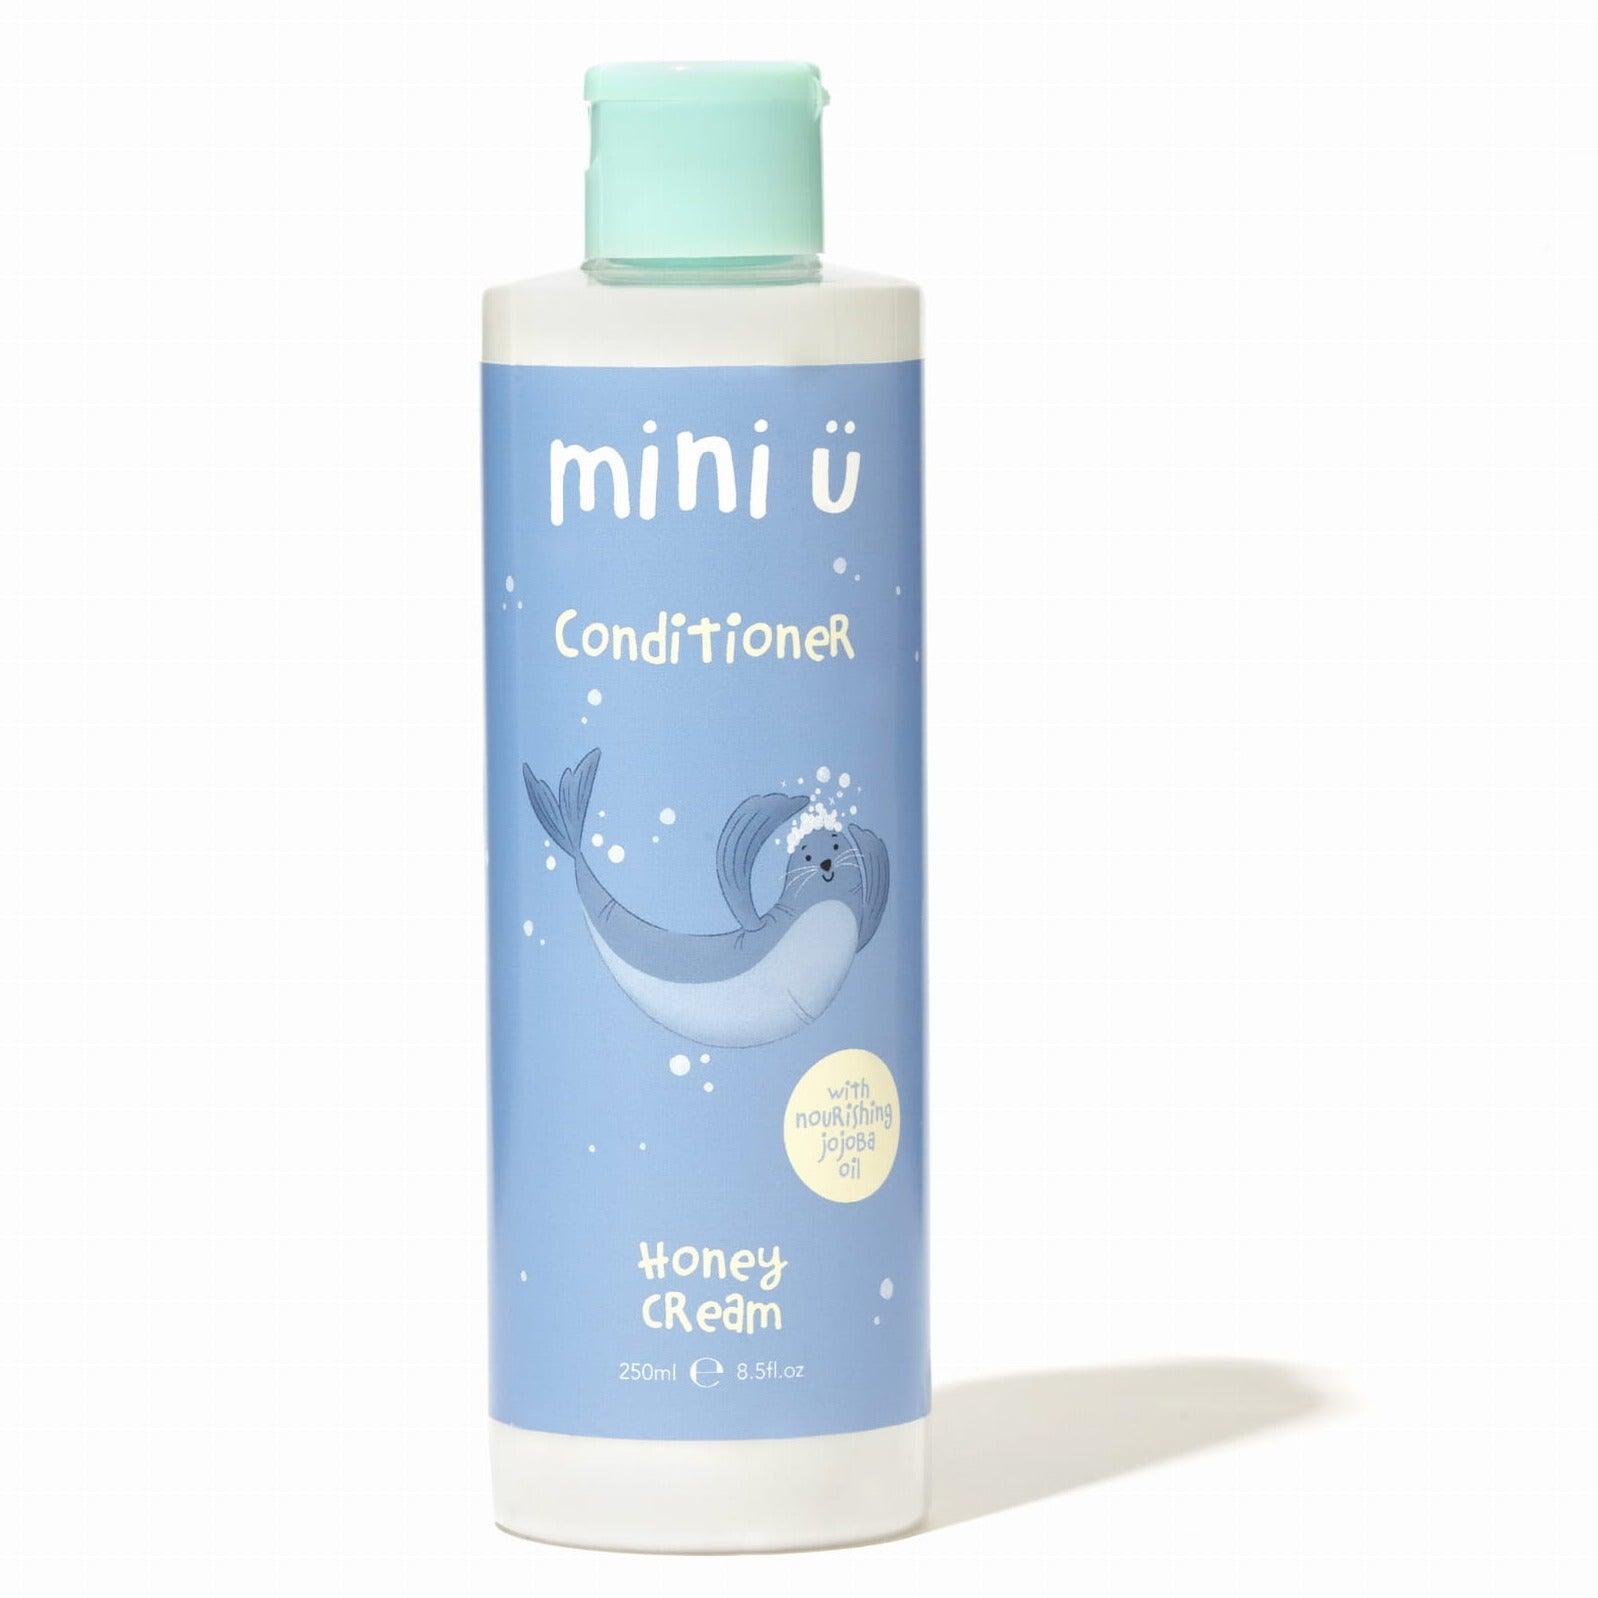 Mini-U: Creme de mel de condicionador de cabelo natural